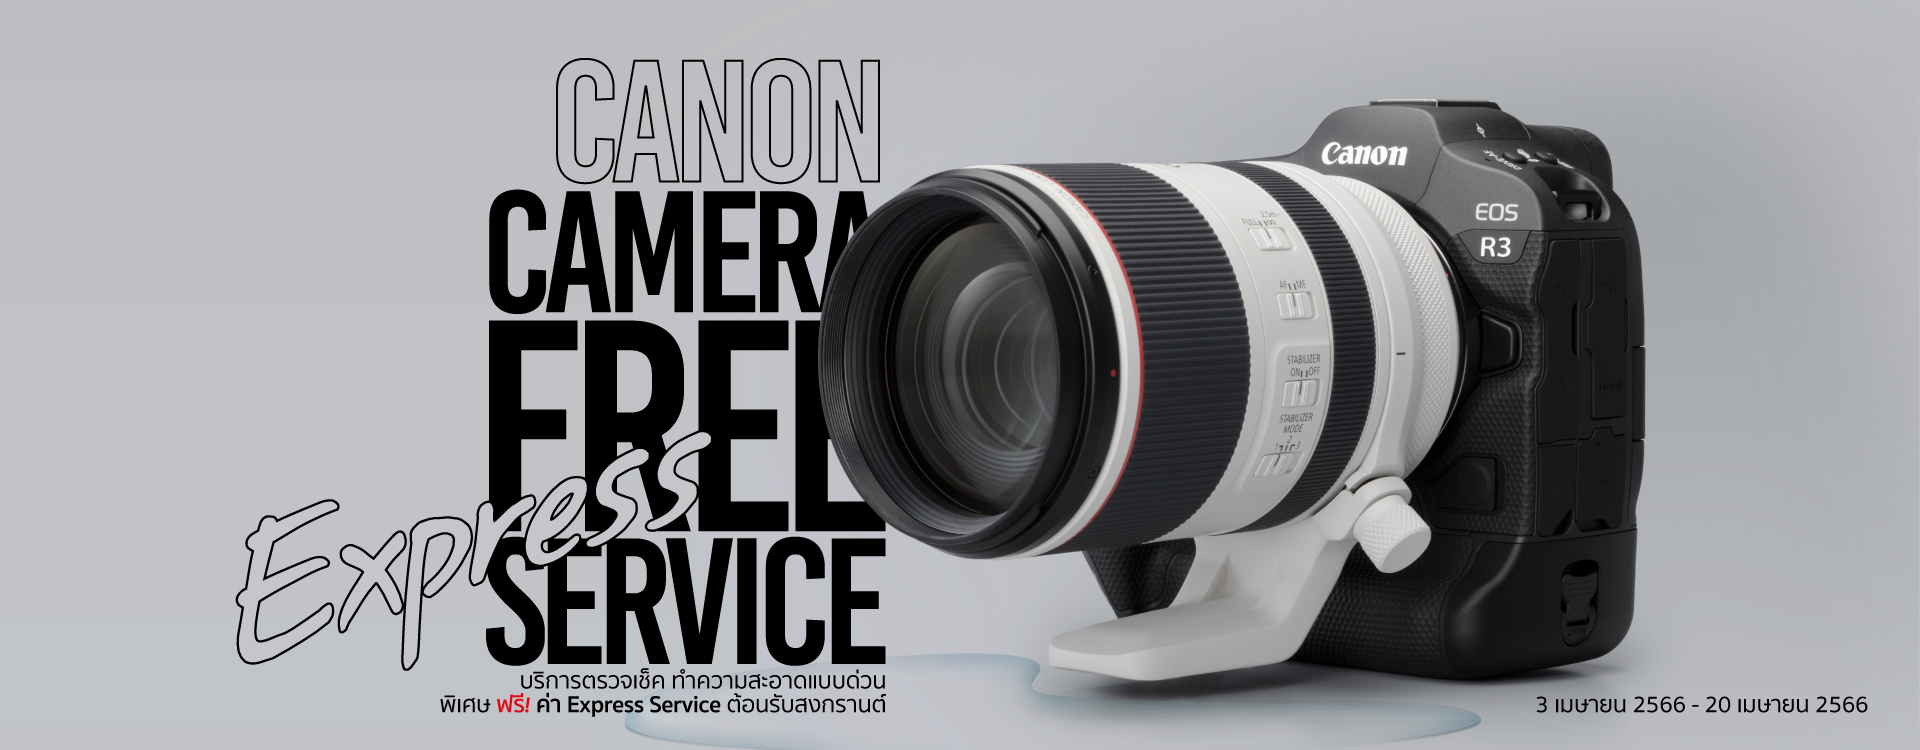 Canon ชวนตรวจเช็ค ทำความสะอาด และซ่อมกล้อง/อุปกรณ์เสริม ก่อนออกทริป